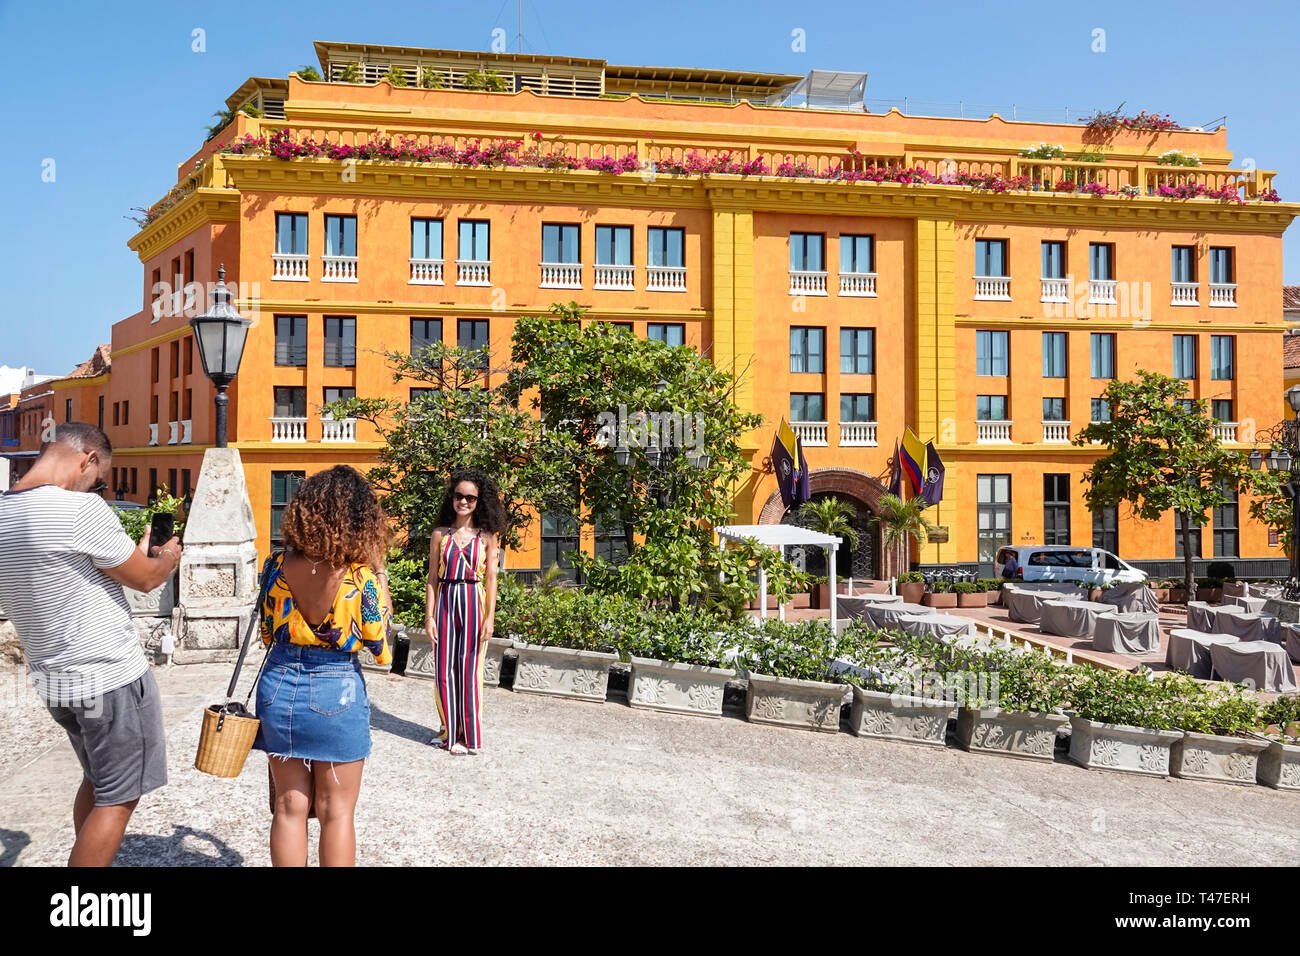 Cartagena Colombie,Hôtel Charleston Santa Teresa,hôtel,extérieur de bâtiment,résident hispanique,résidents,homme hommes,femme femmes,pose pour la photo, Banque D'Images